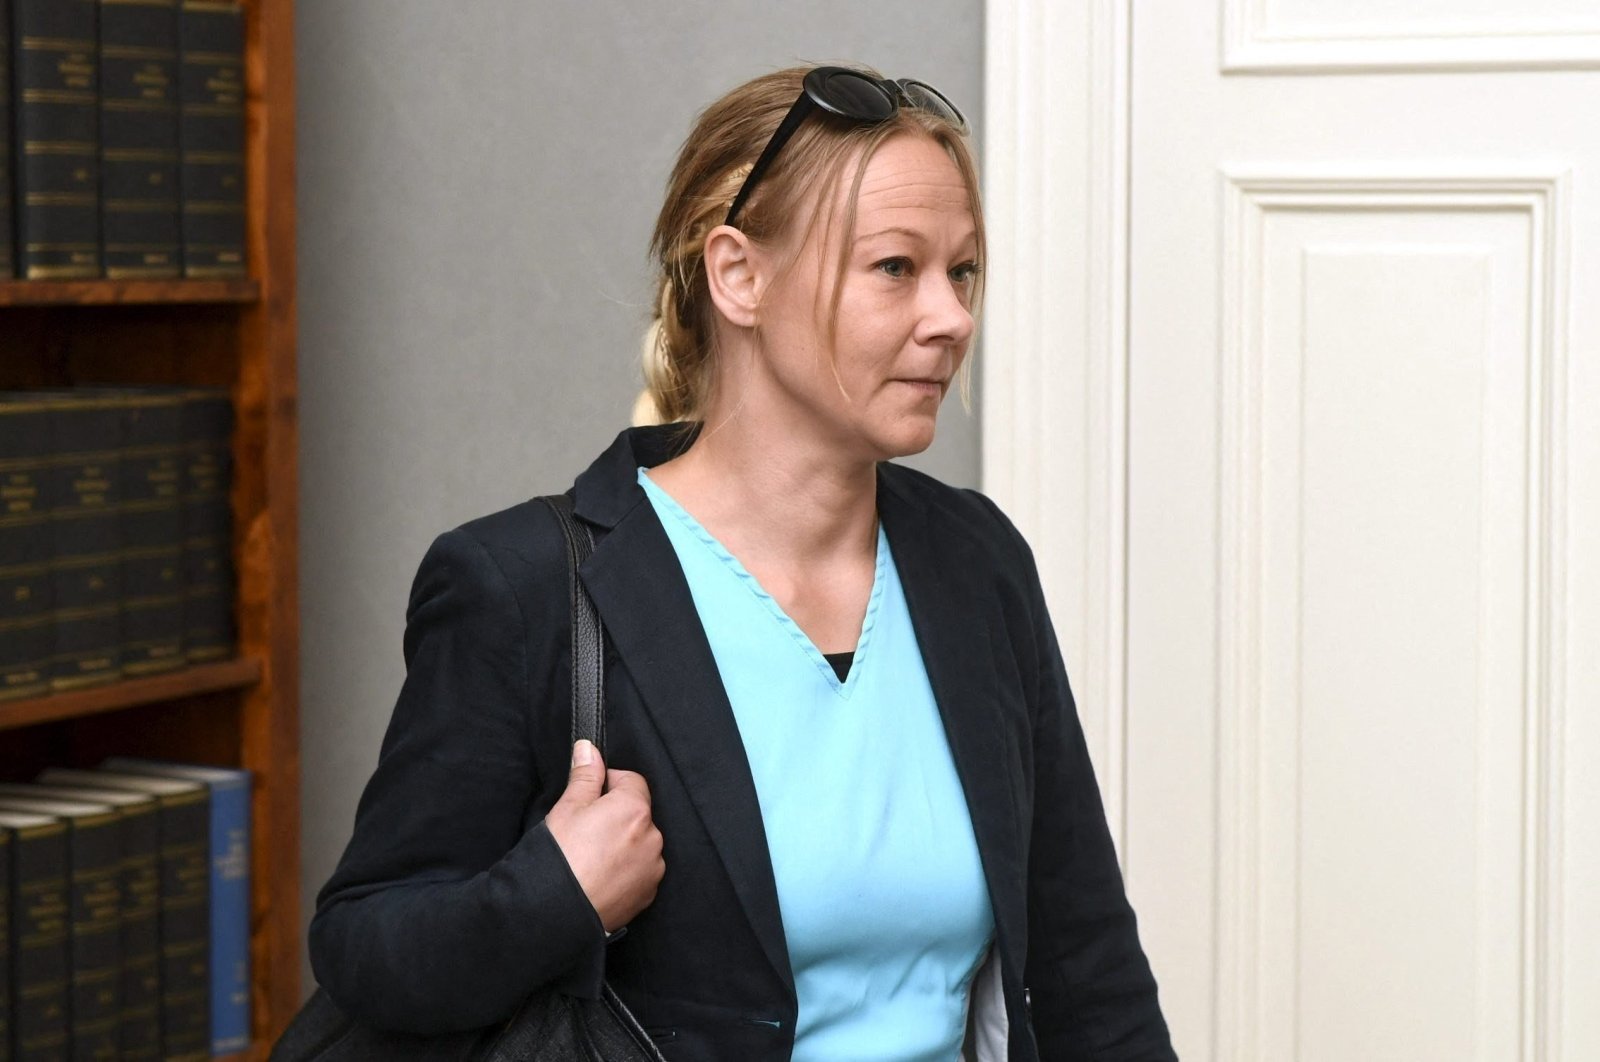 Pengadilan Finlandia menemukan jurnalis bersalah karena menerbitkan rahasia negara